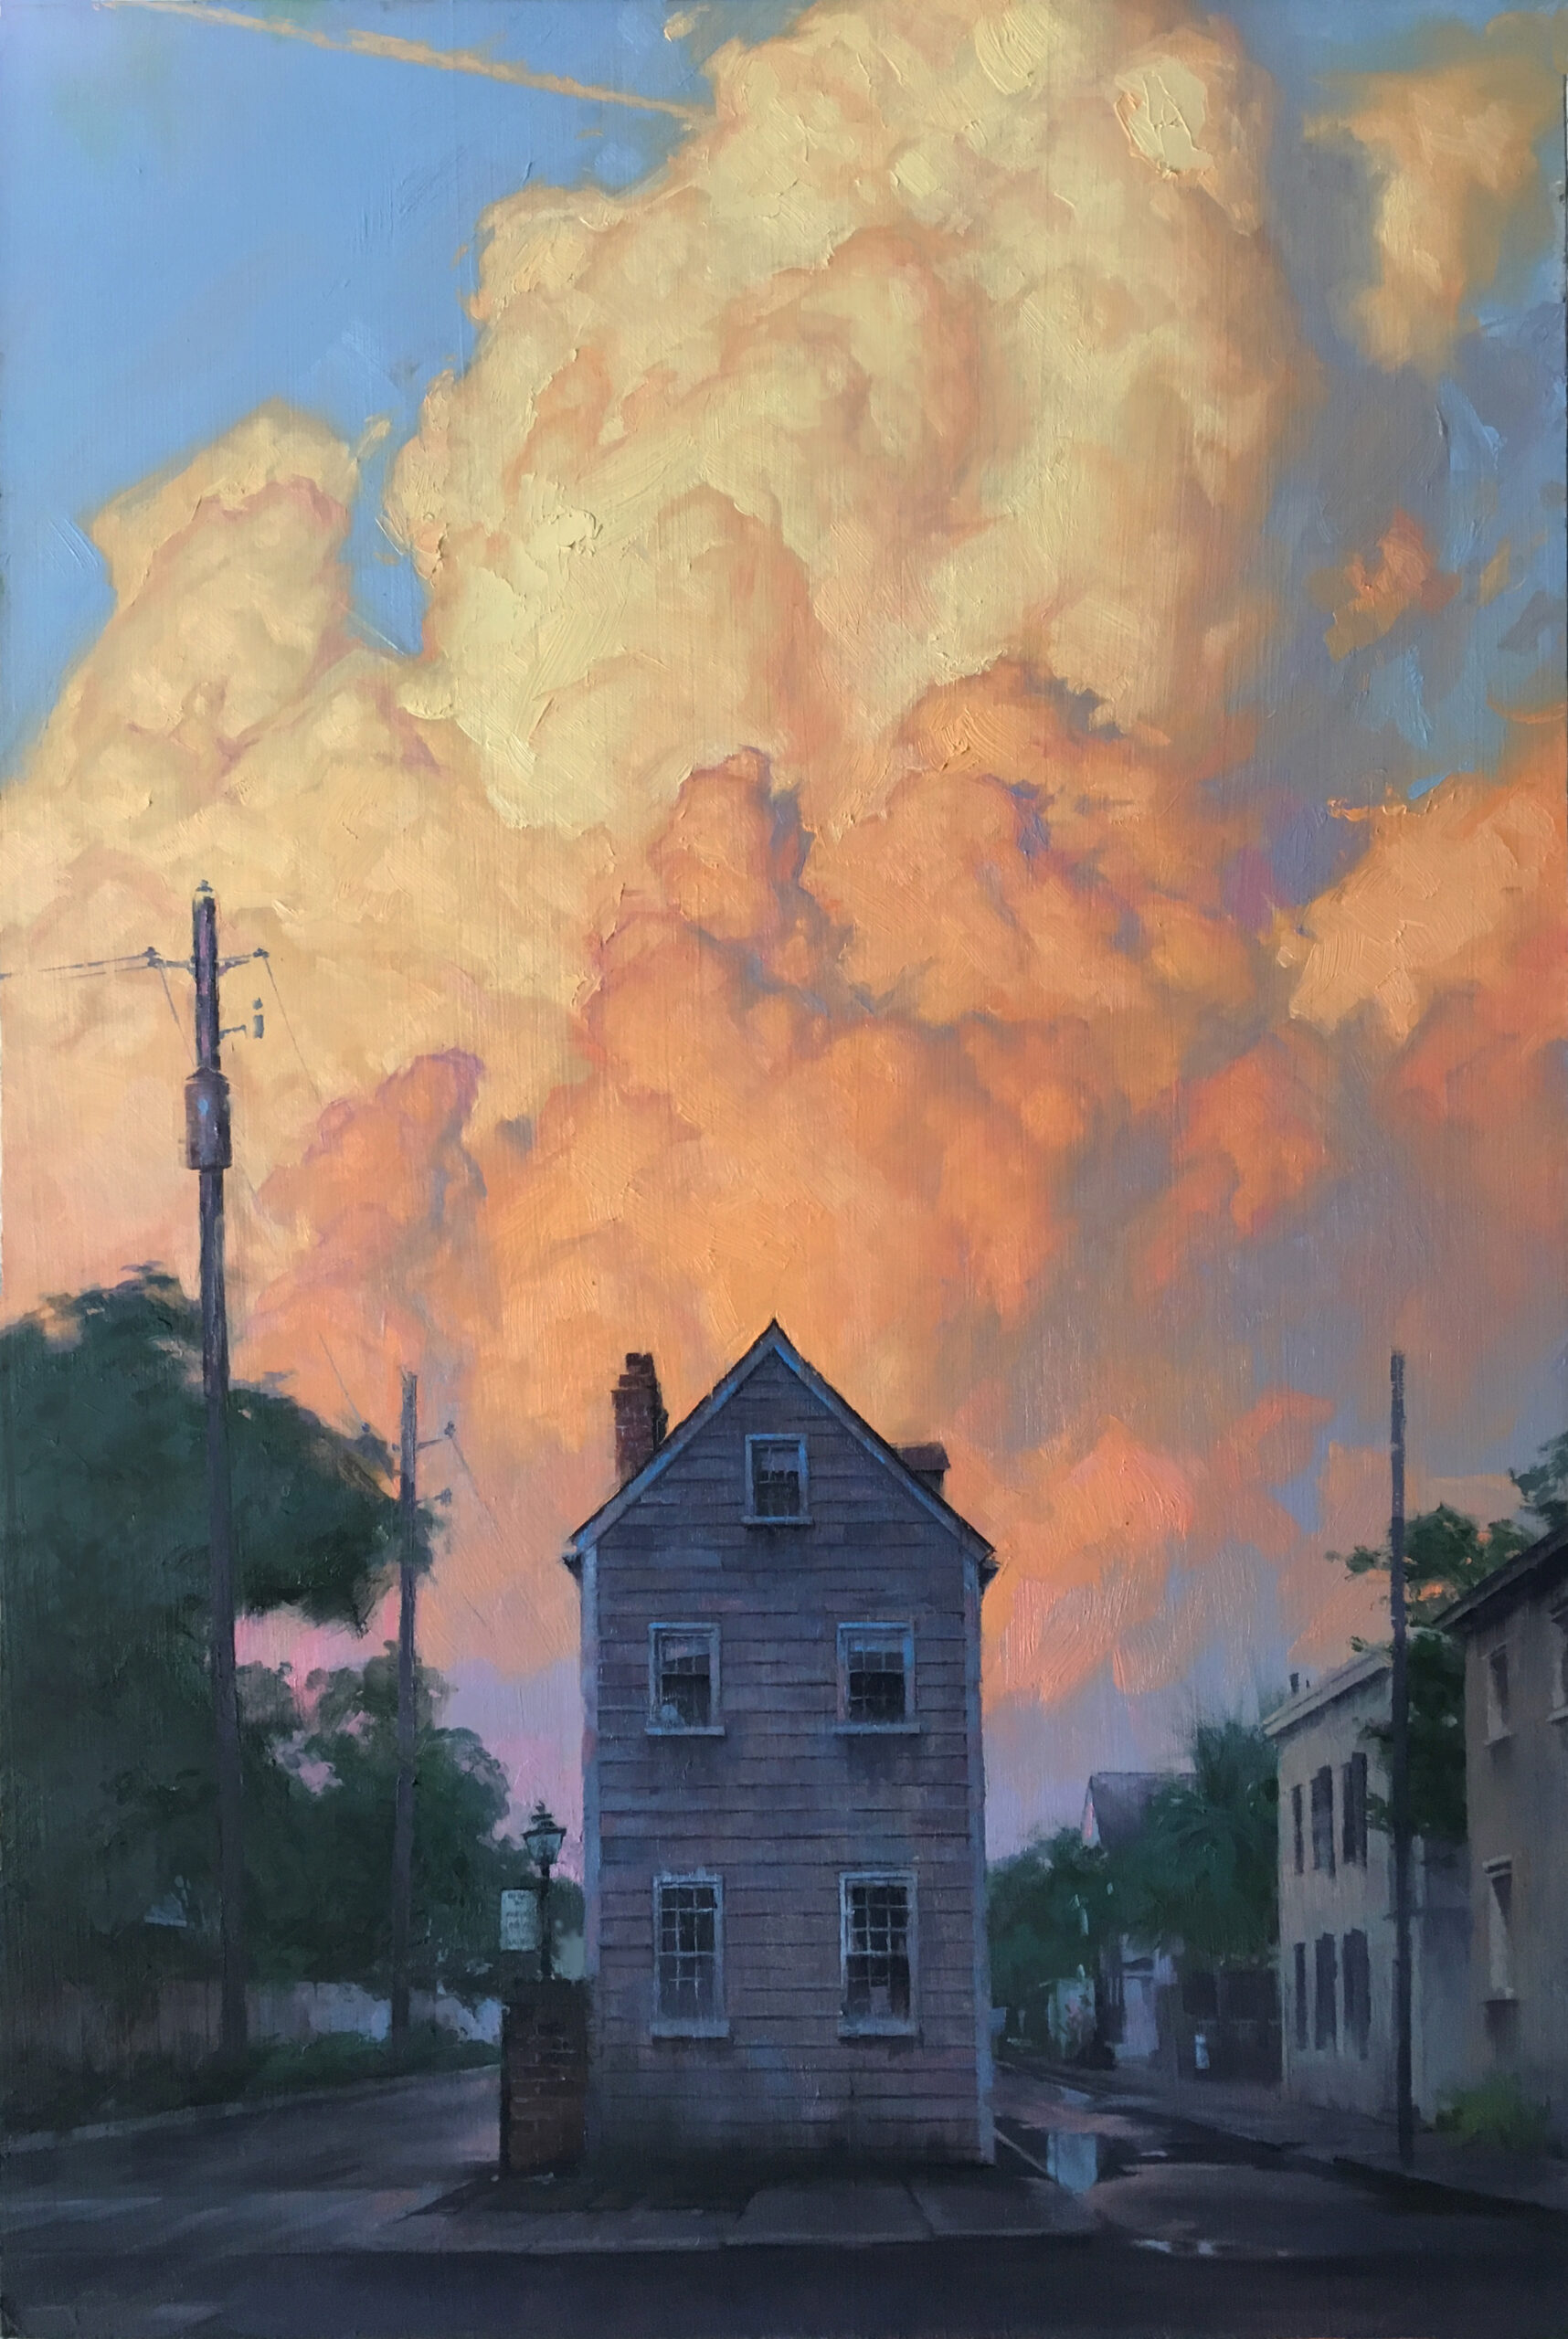 Gavin Glakas, “Logan Street Sunset,” oil on panel, 16” x 24”, studio